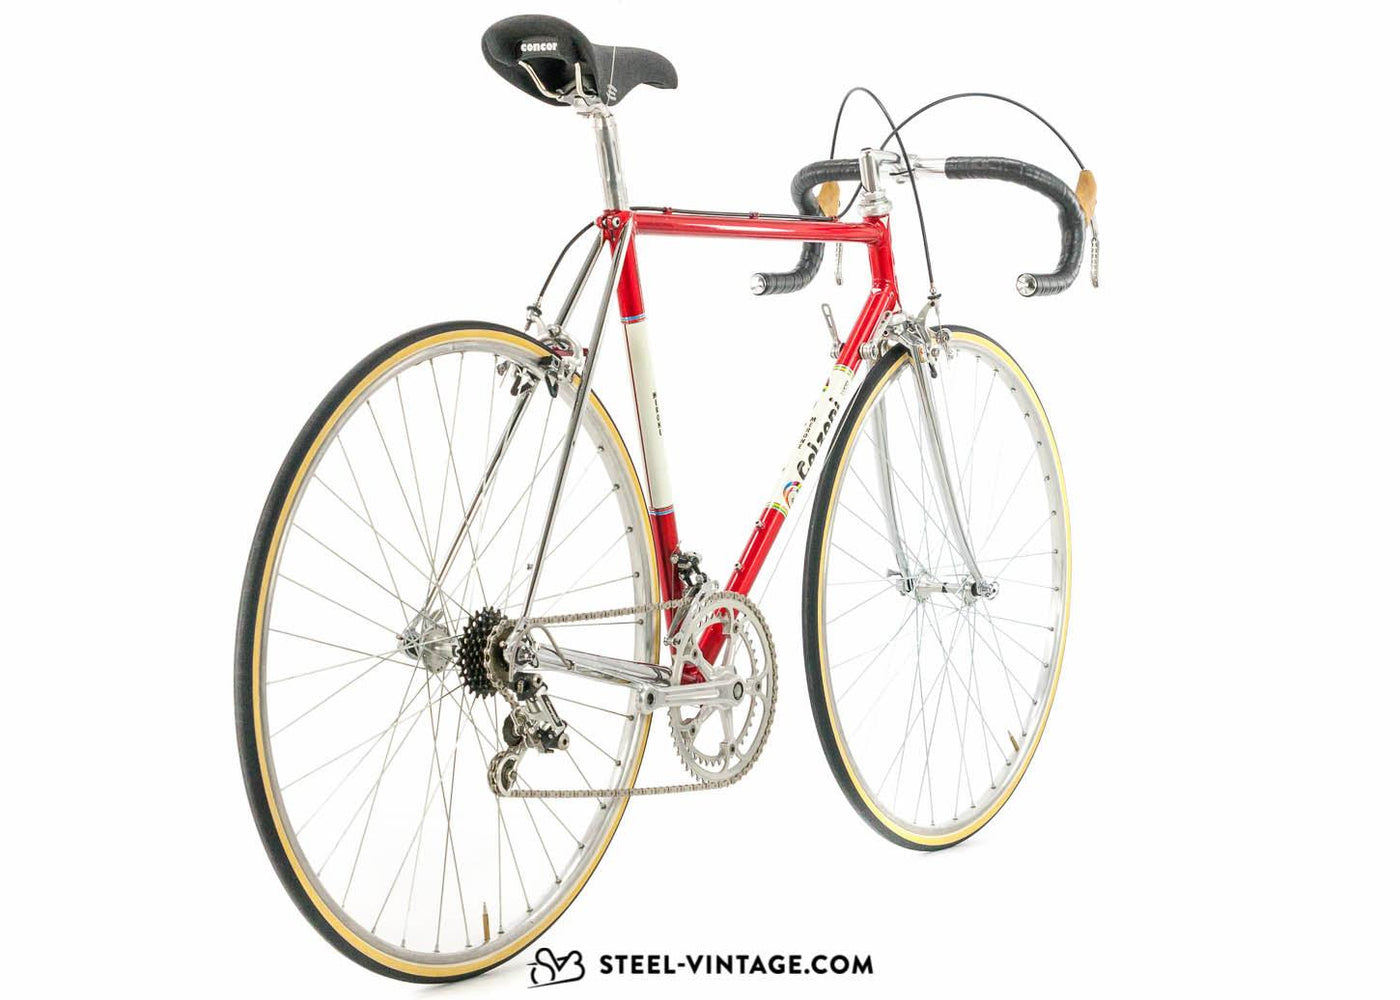 Colzani Classic Road Bike 1980s - Steel Vintage Bikes